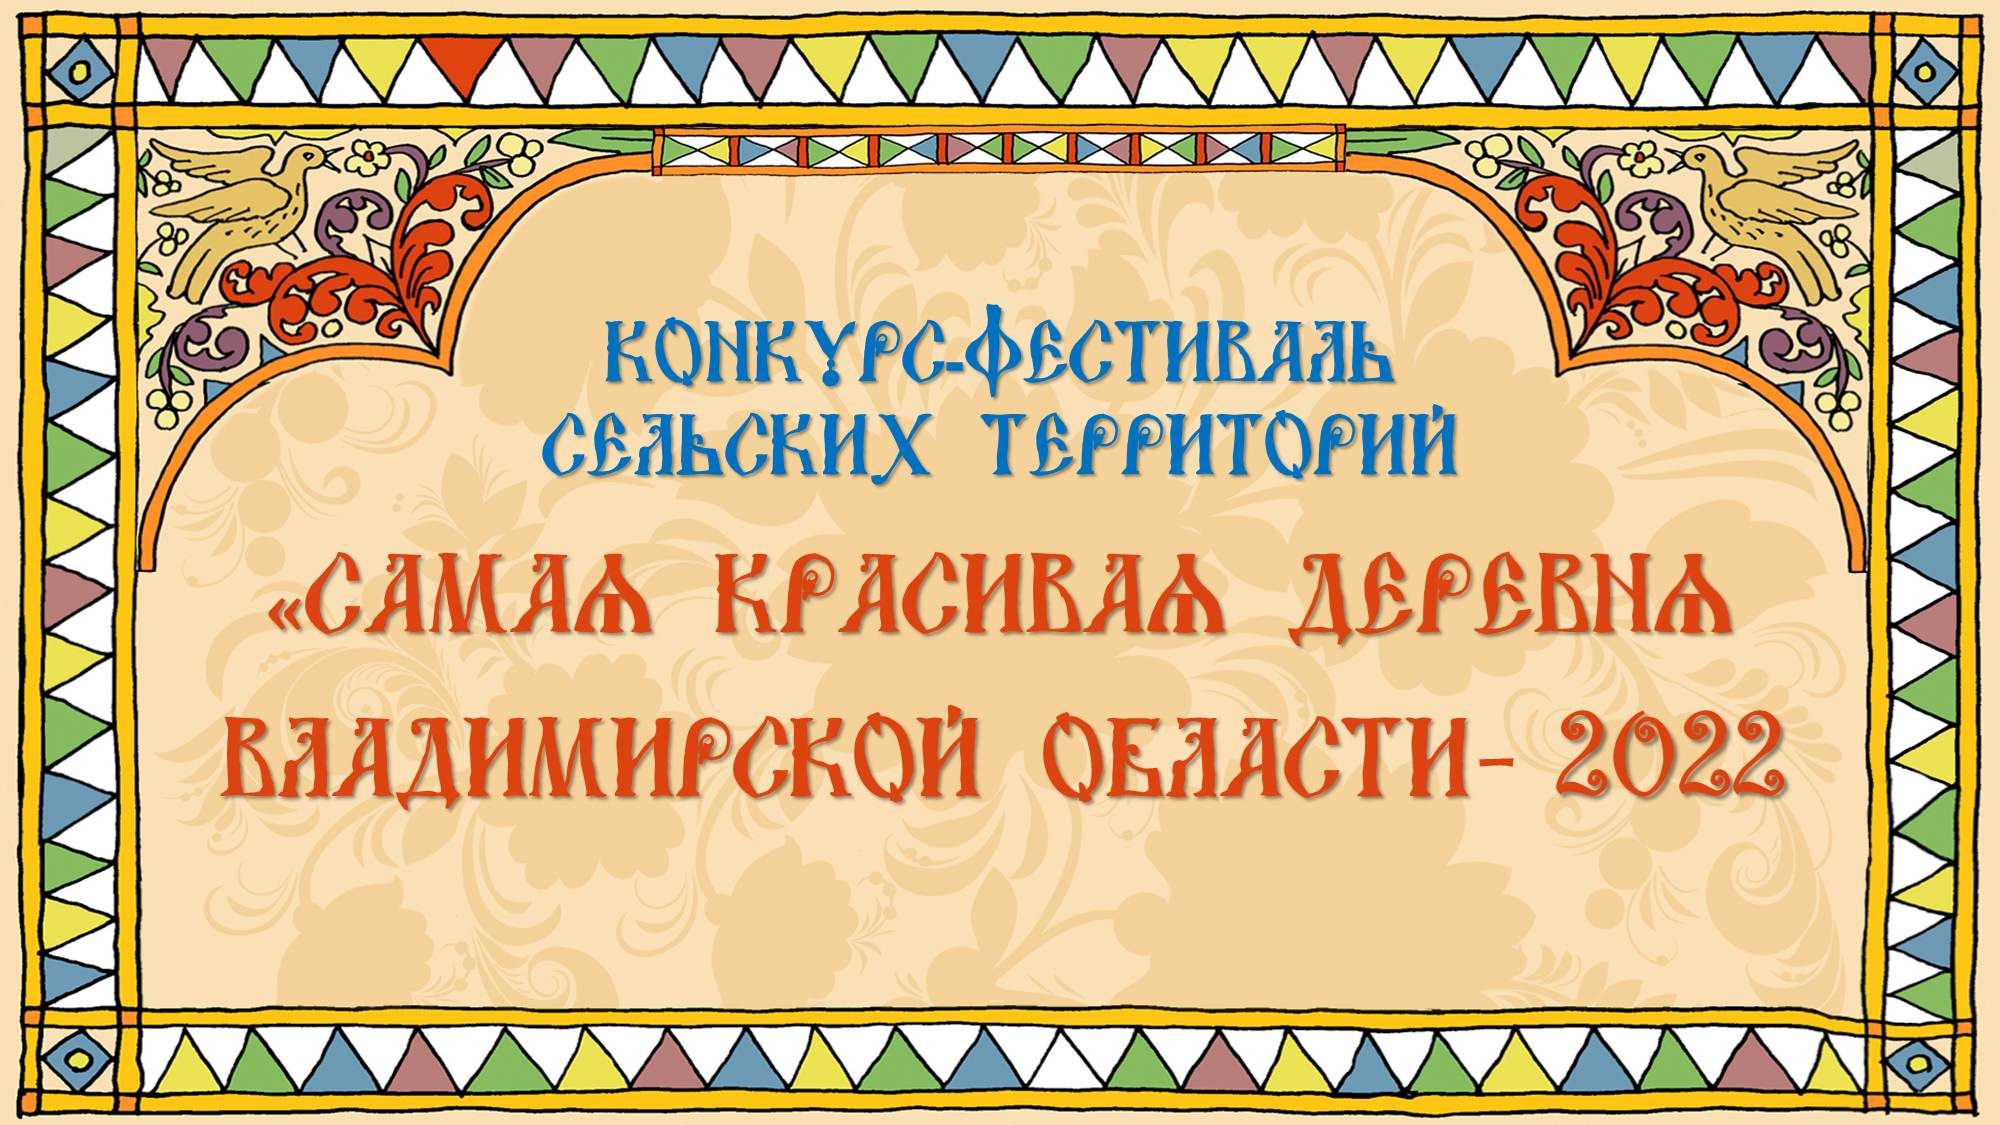 Конкурс Фестиваль сельских территорий во Владимирской области 2022 — Официальный сайт